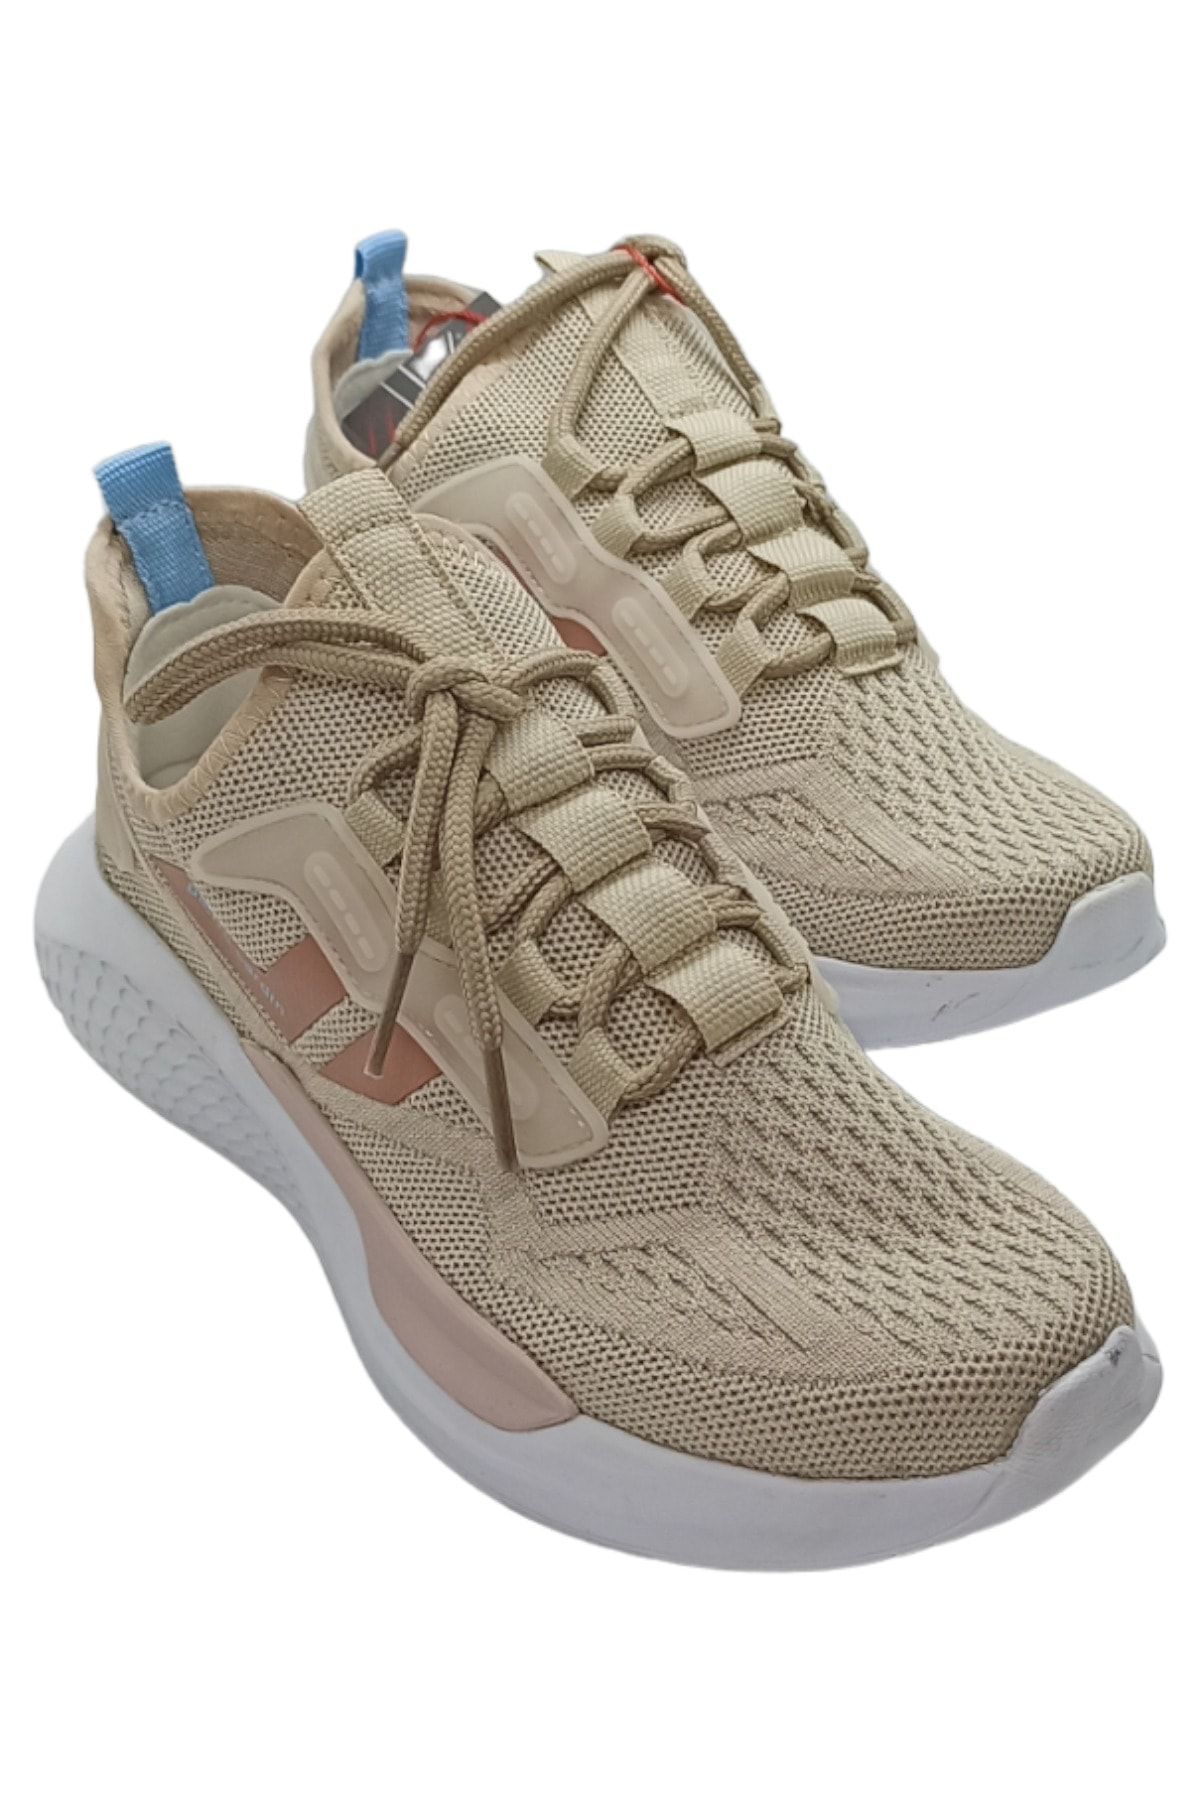 Pierre Cardin Kadın Yazlık Sneaker Bağcıkcız Triko Yürüyüş Ve Koşu Ayakkabısı Günlük Kullanılabilir.